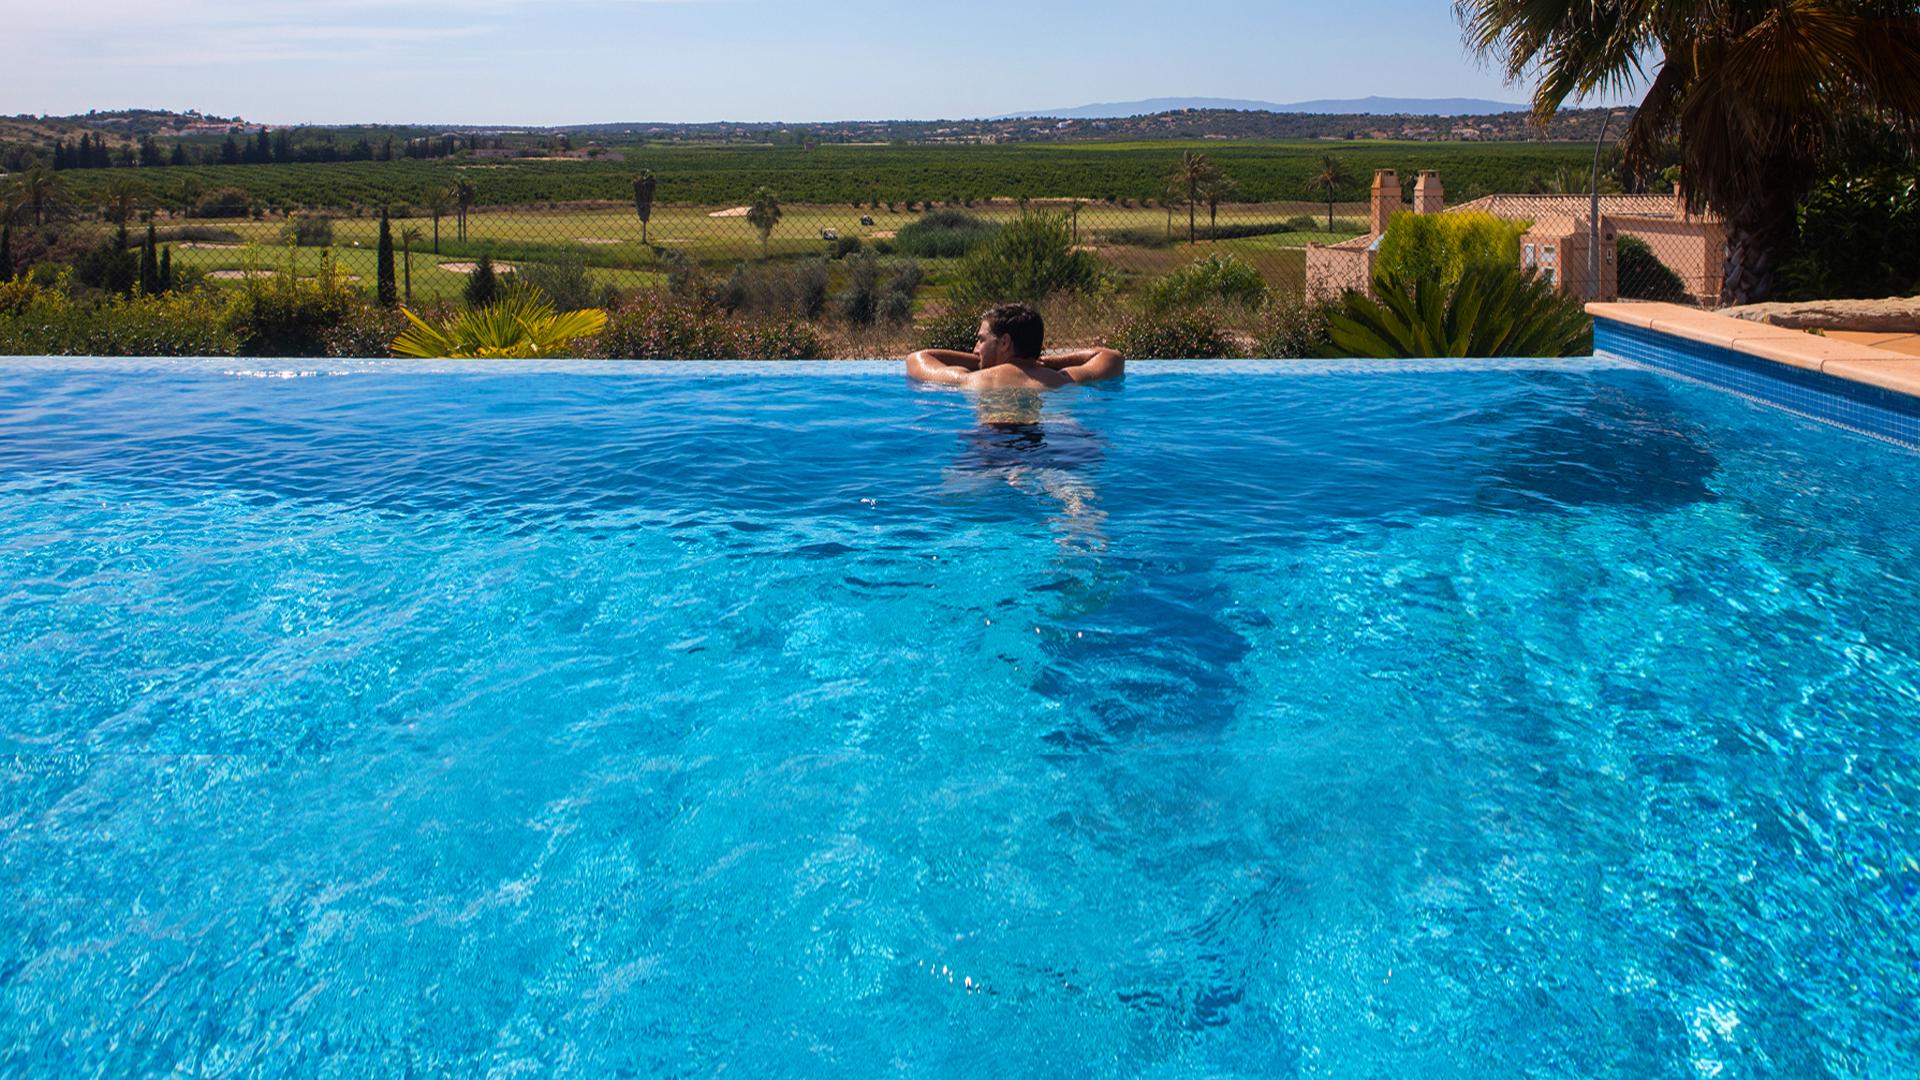 Vivir en el Algarve: 5 razones para elegir nuestra villa con piscina privada